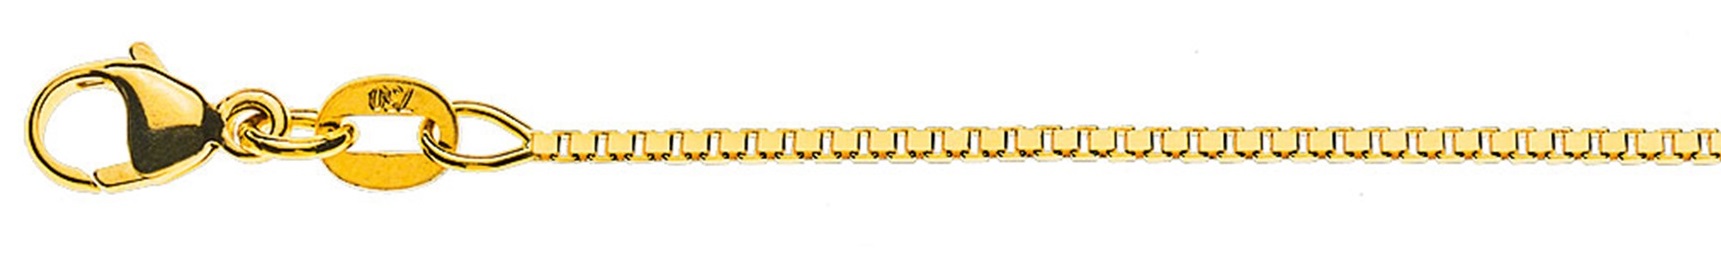 AURONOS Prestige Halskette Gelbgold 18K Venezianerkette diamantiert 38cm 1.1mm